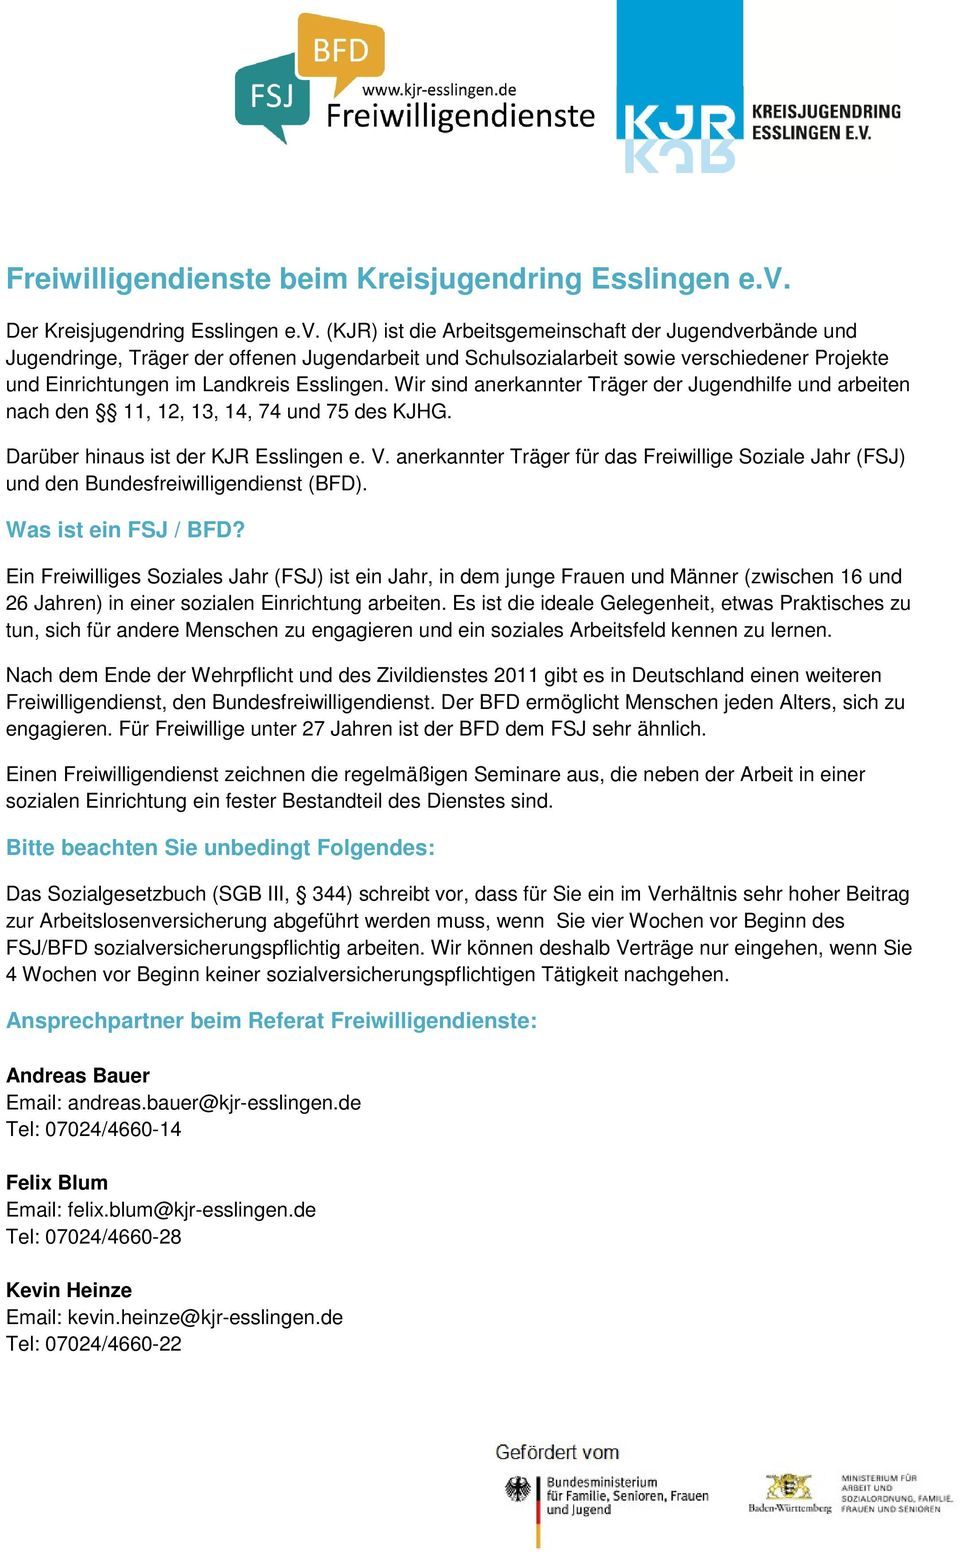 (KJR) ist die Arbeitsgemeinschaft der Jugendverbände und Jugendringe, Träger der offenen Jugendarbeit und Schulsozialarbeit sowie verschiedener Projekte und Einrichtungen im Landkreis Esslingen.